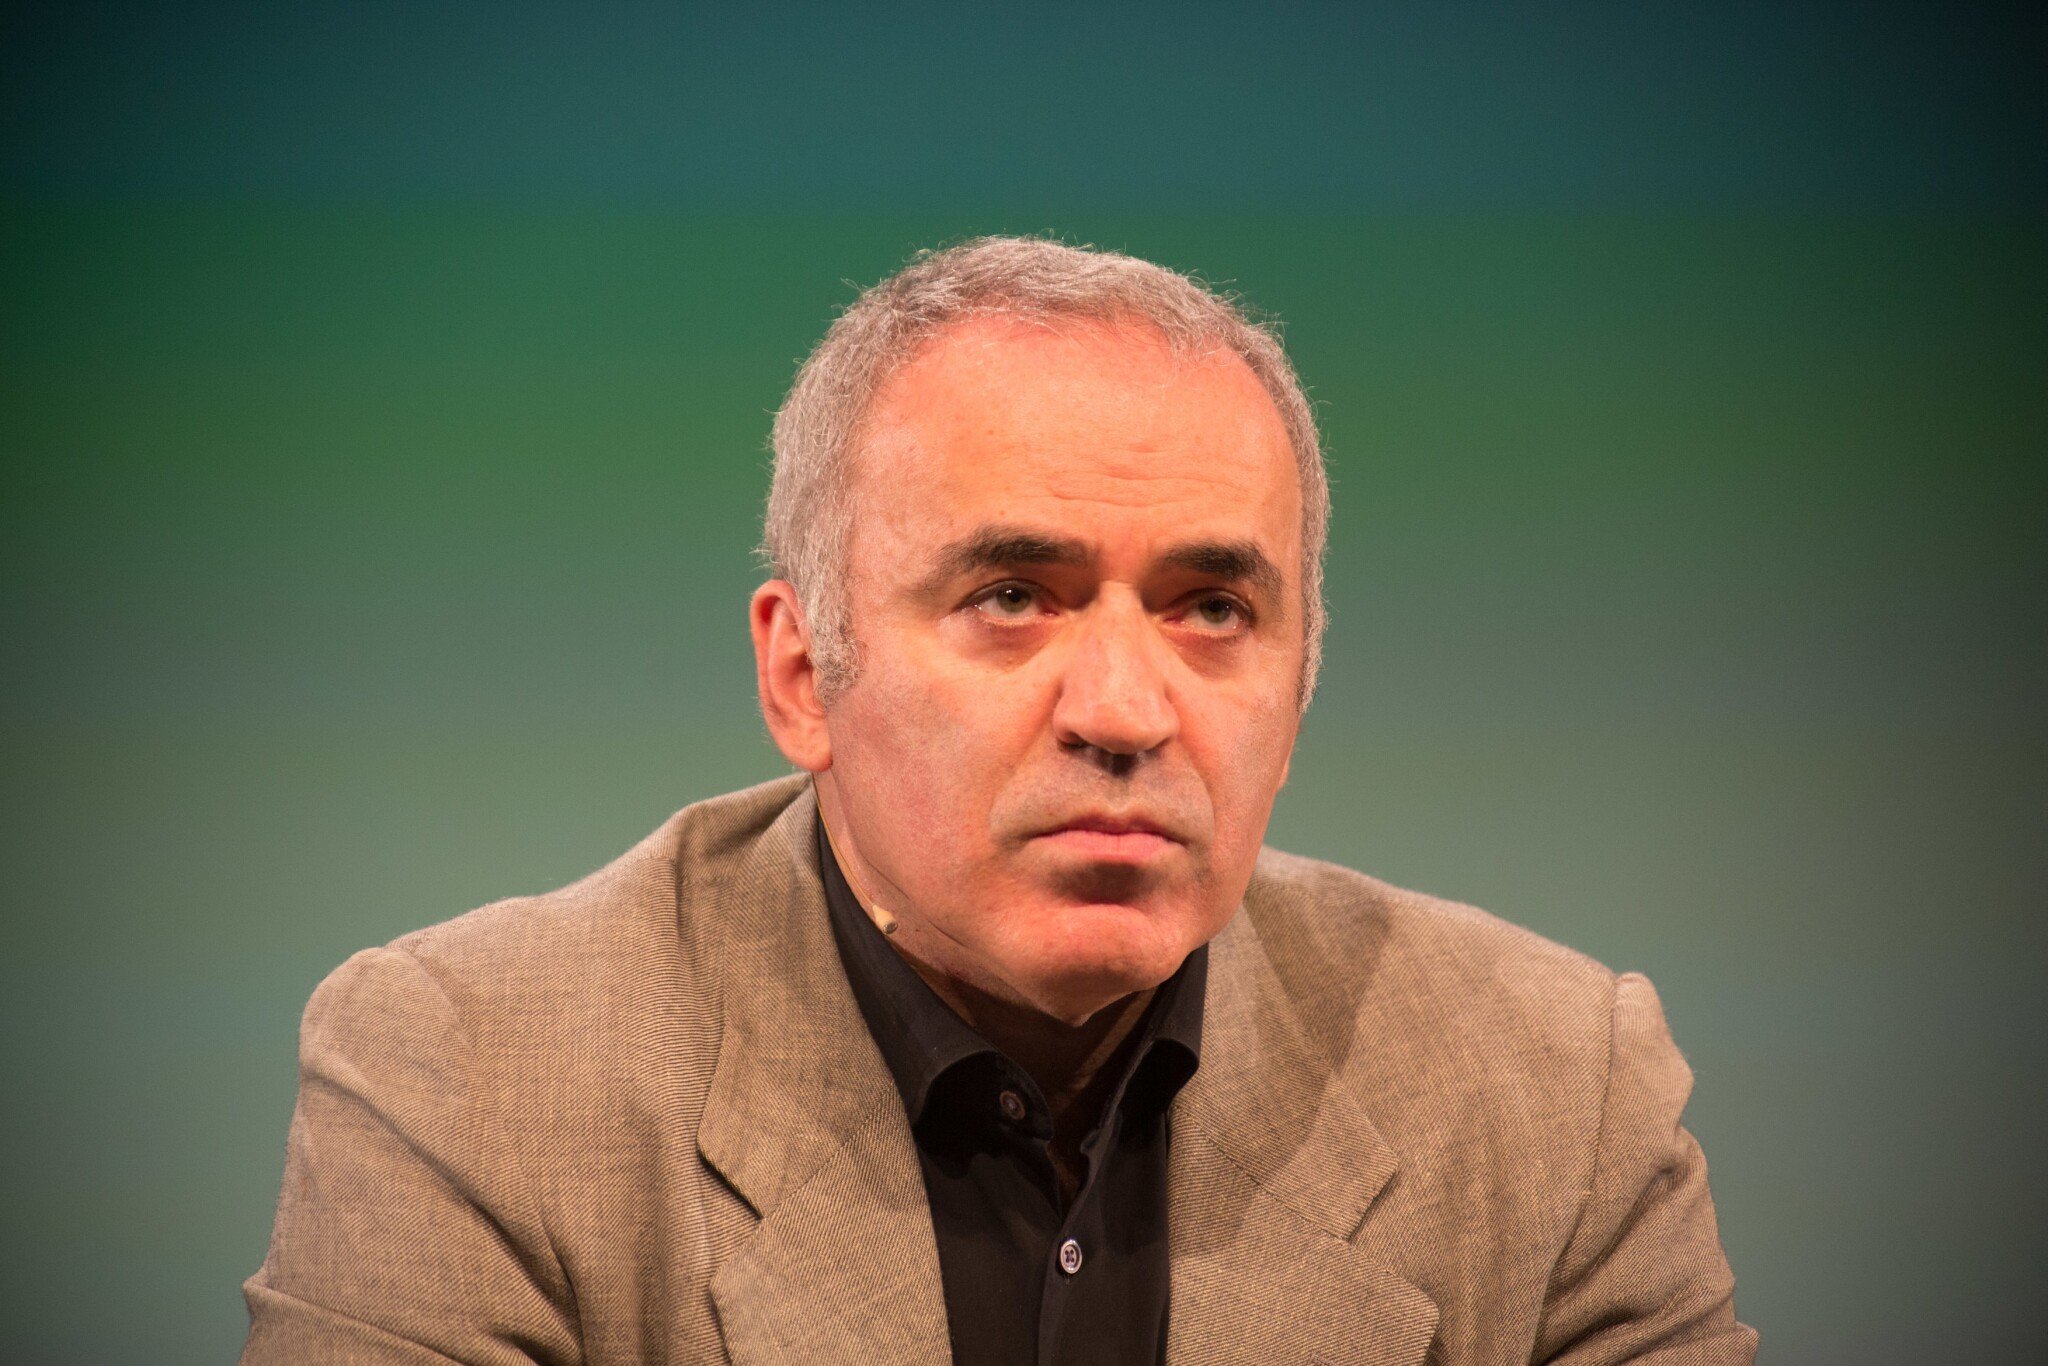 Už jste také zombie? Šachový génius Kasparov varuje před umělou inteligencí